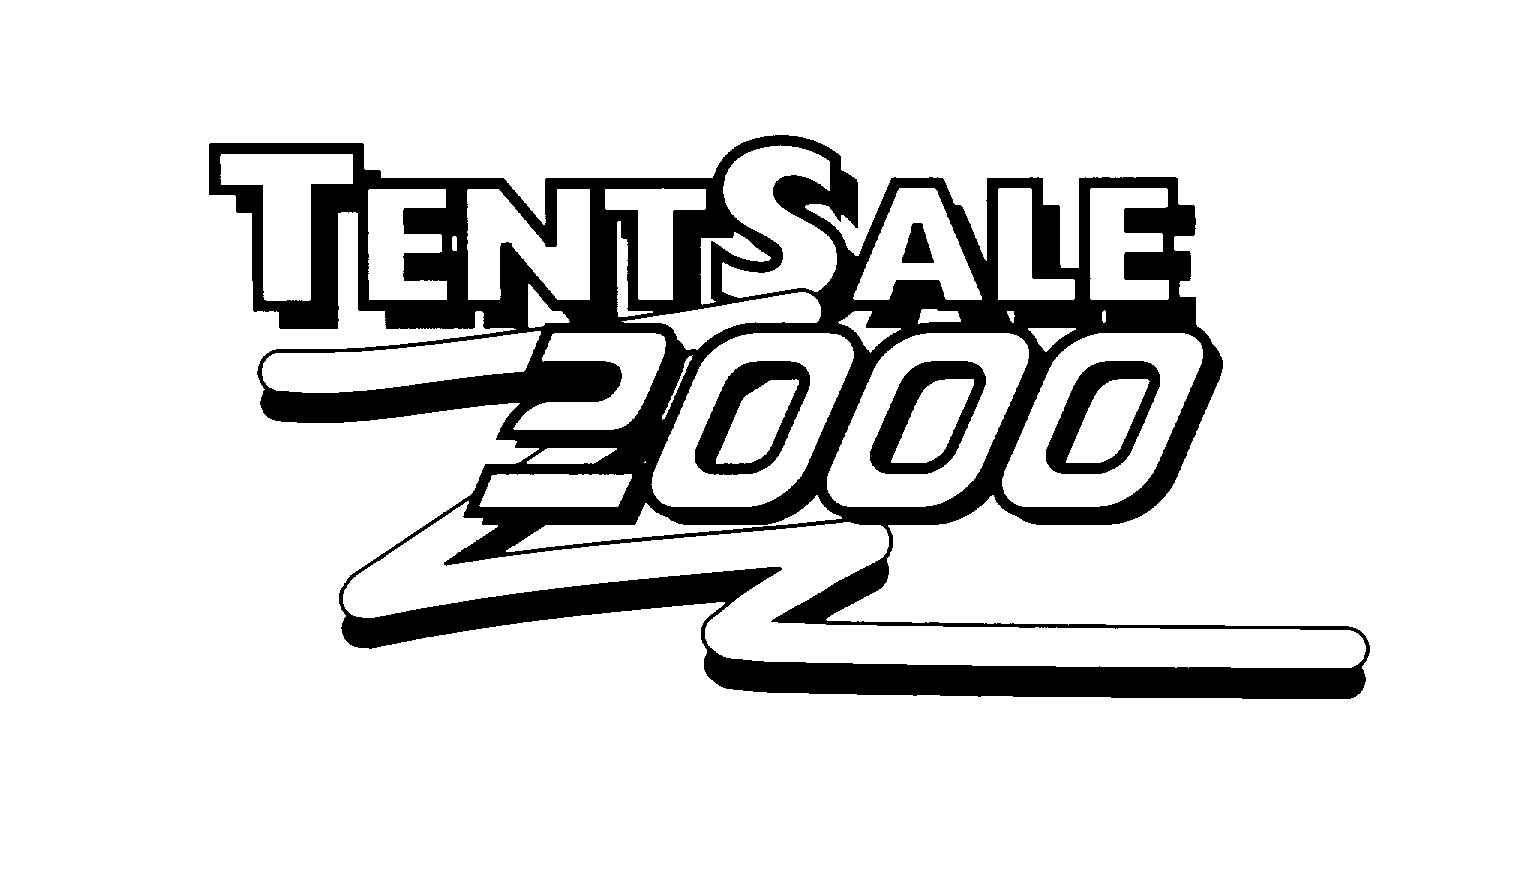  TENTSALE 2000